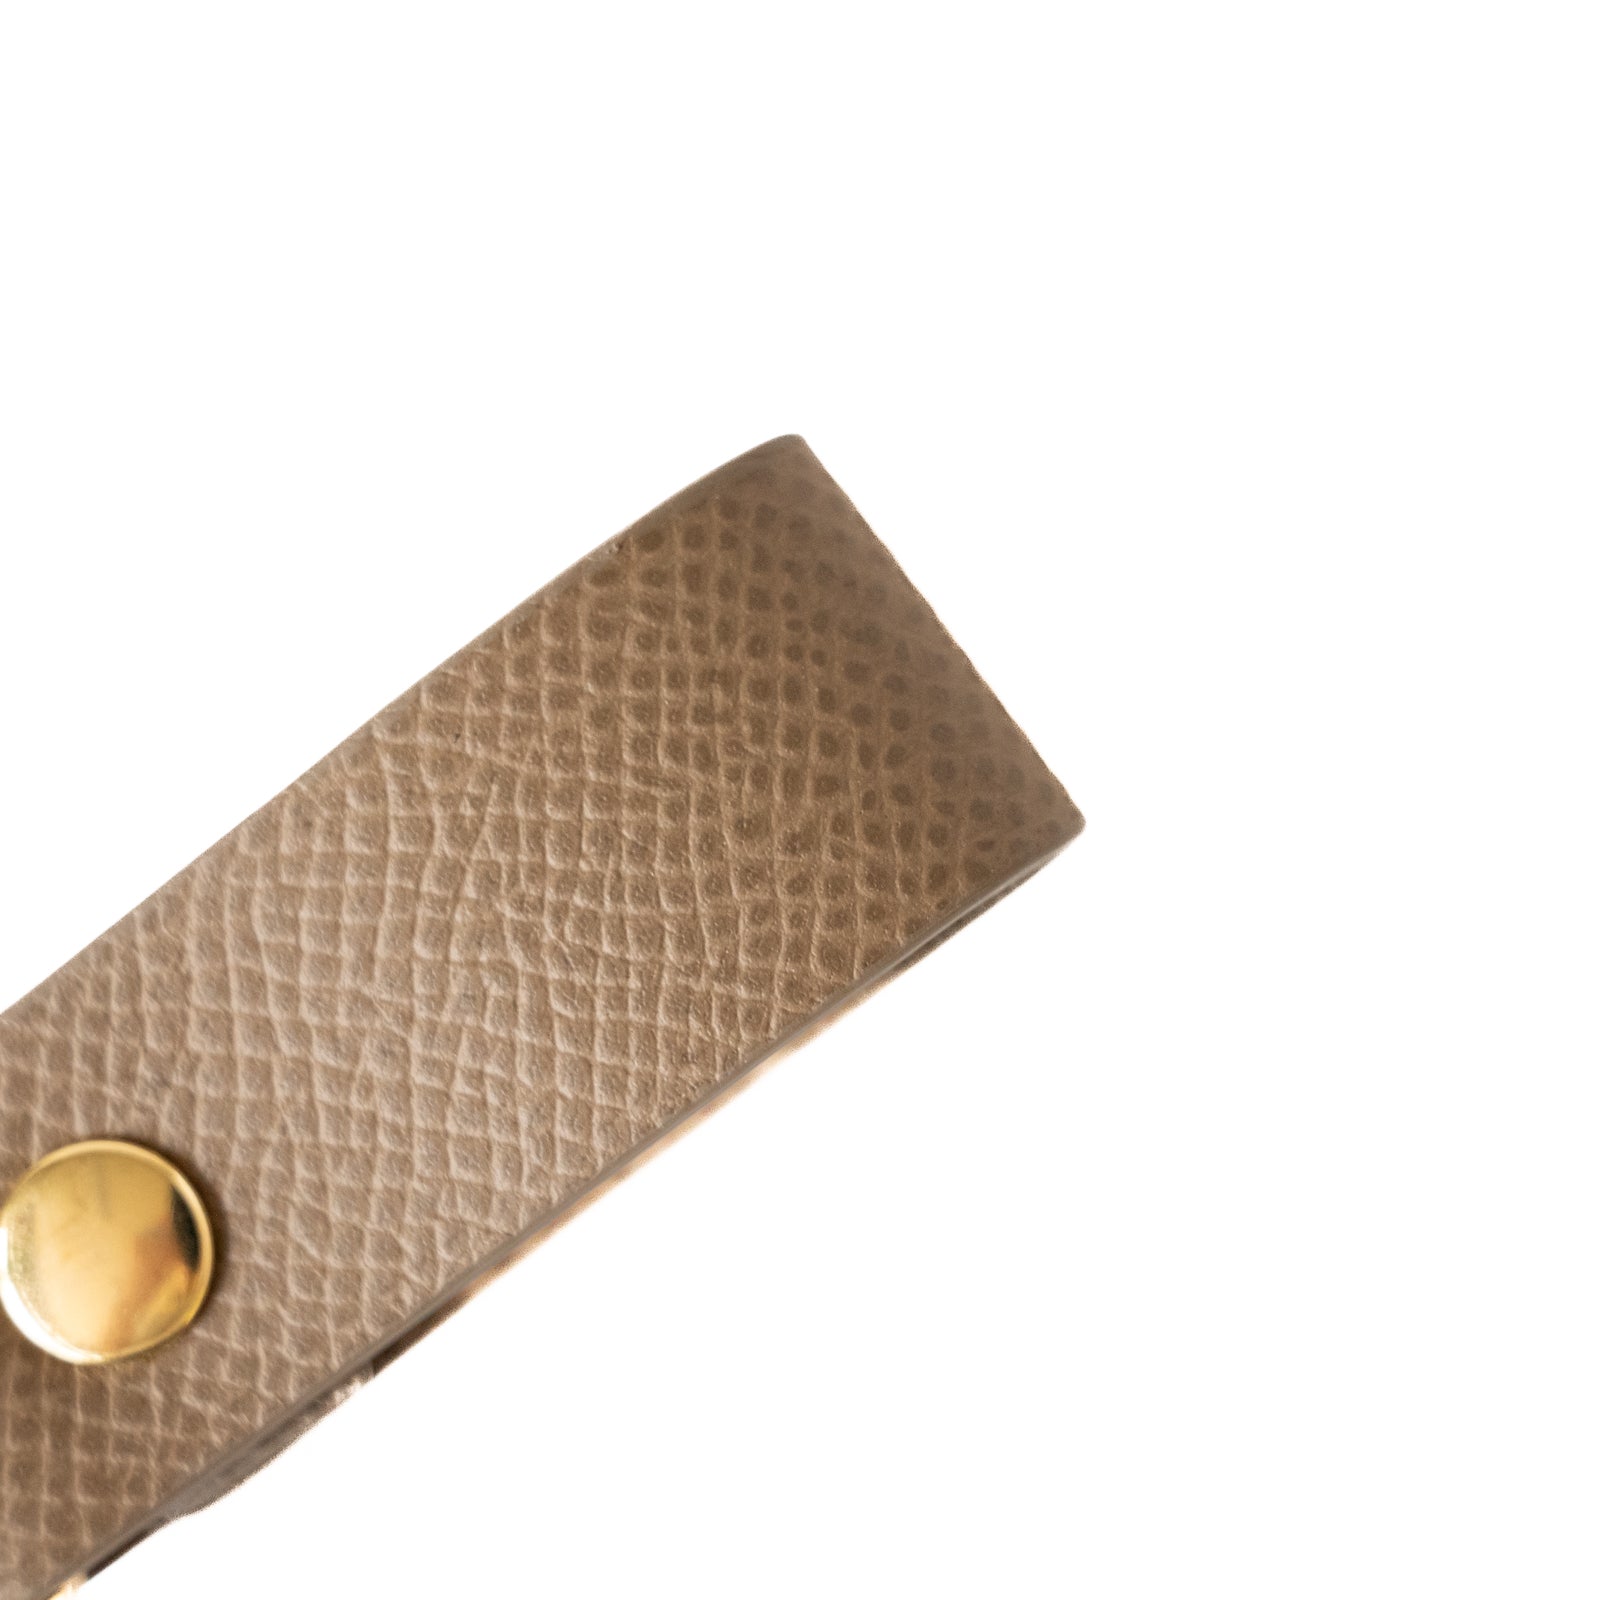 Leather key ring / Veau Epsom